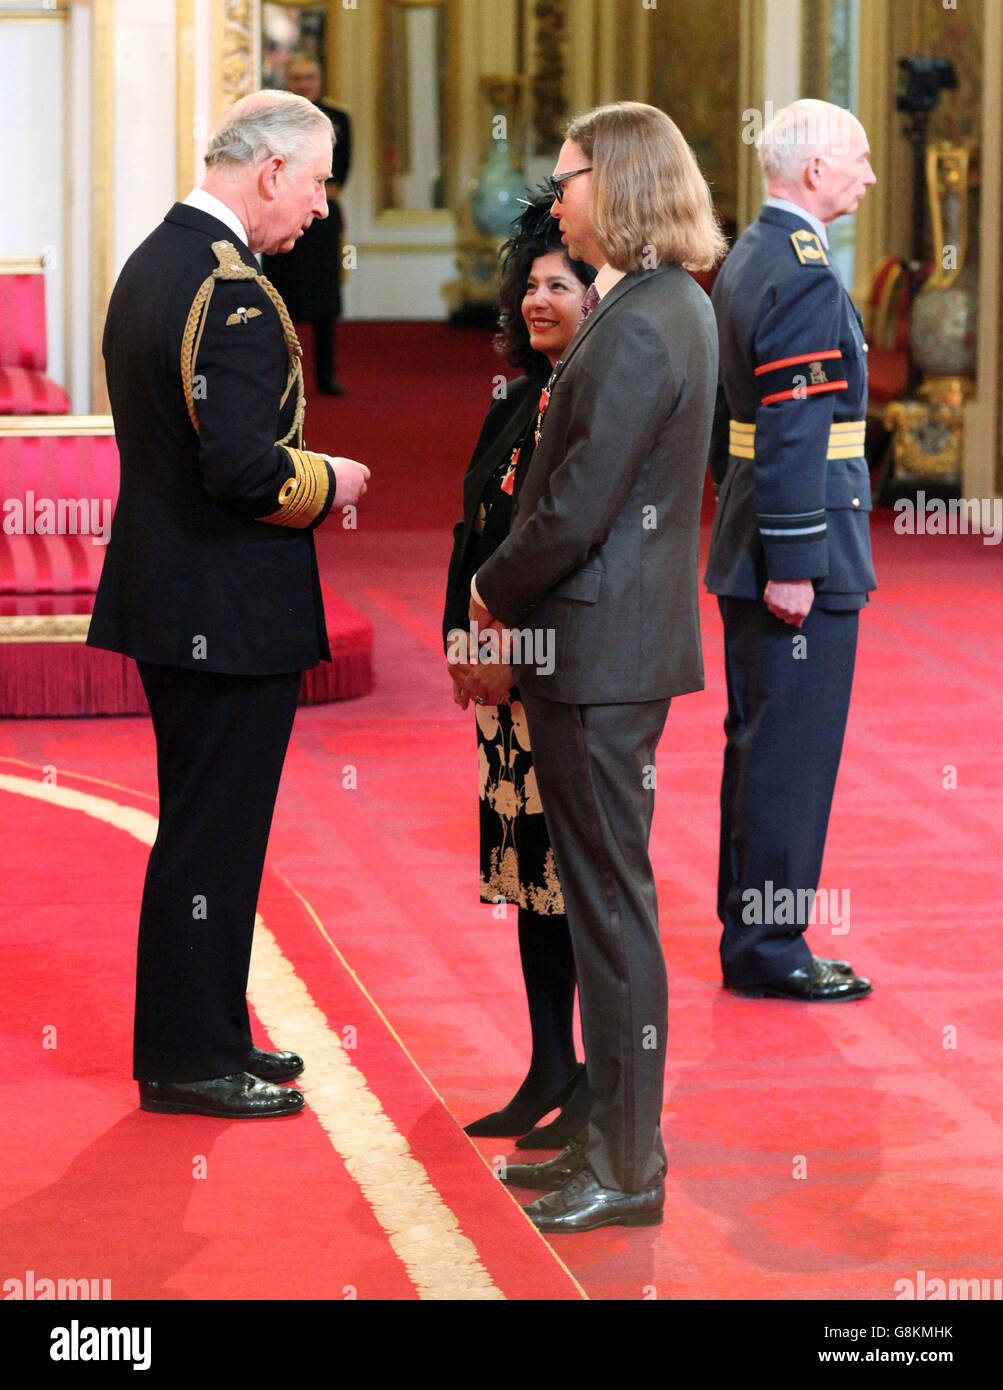 Xochiltzin Birch und Michael Birch, die beide während einer Investiturzeremonie im Buckingham Palace, London, vom Prince of Wales zum OBE (Officer of the Order of the British Empire) gemacht wurden. Stockfoto